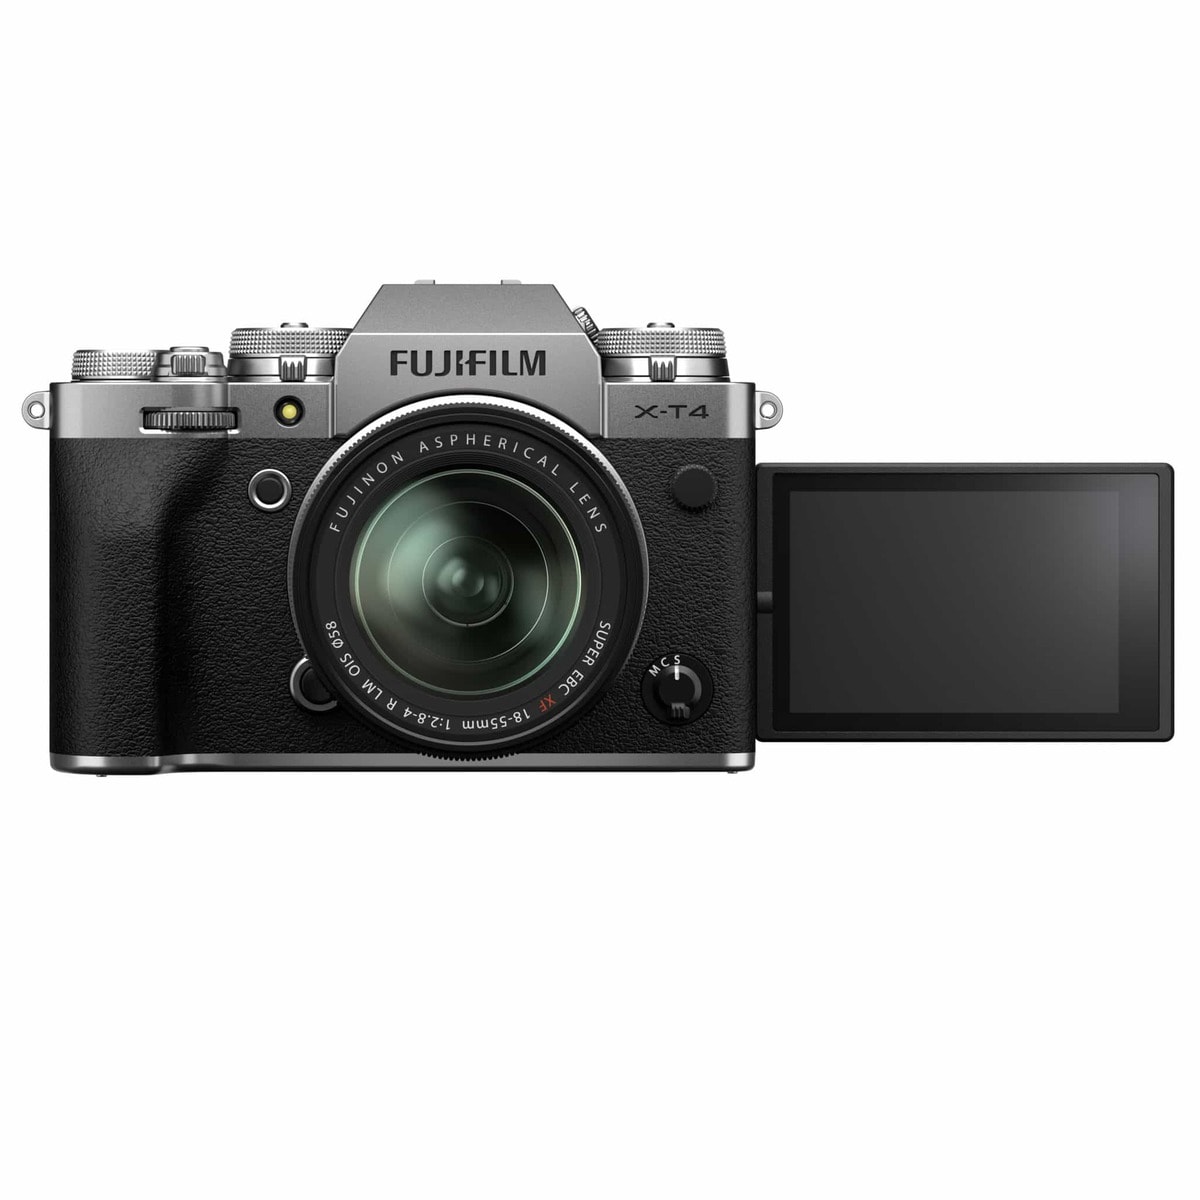 Pantalla selfie Fujifilm XT4.